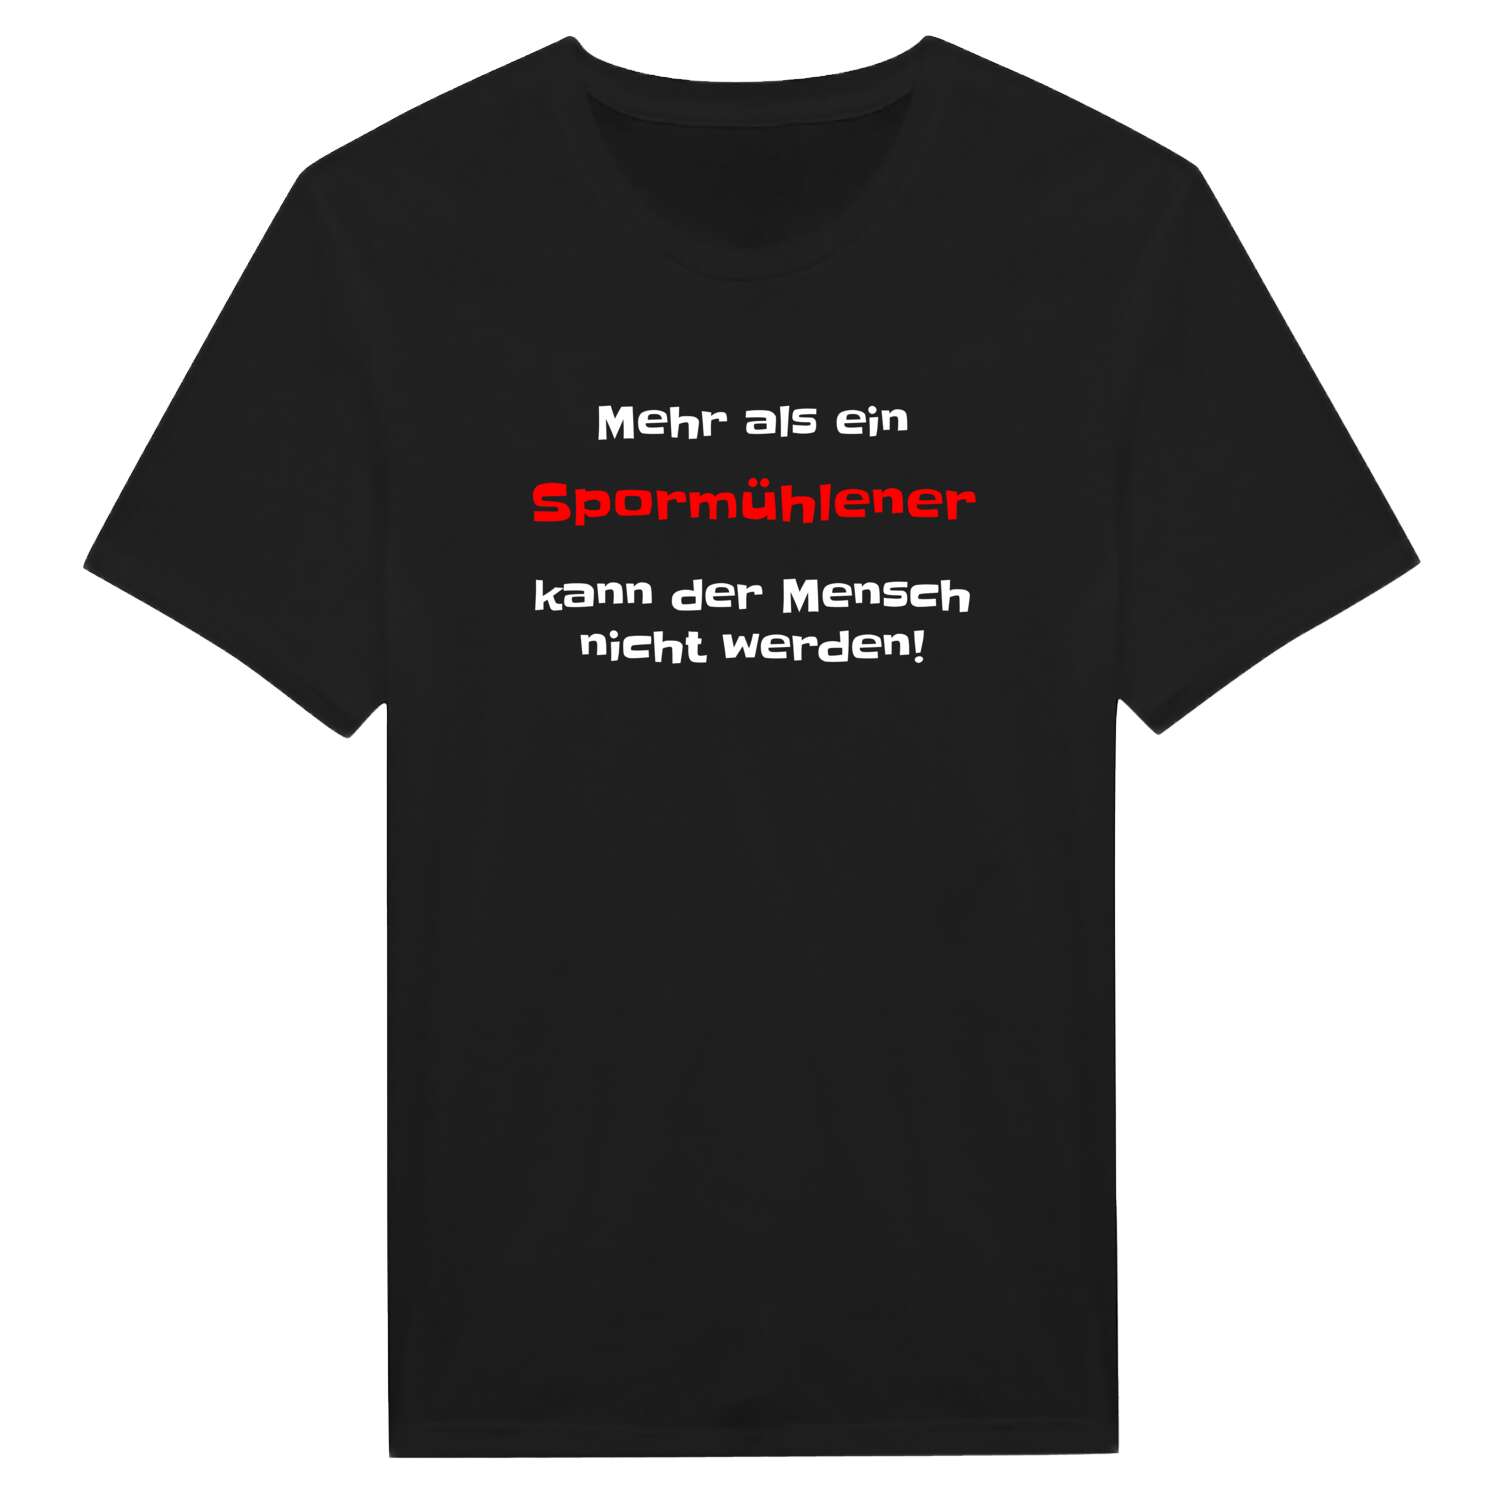 Spormühle T-Shirt »Mehr als ein«